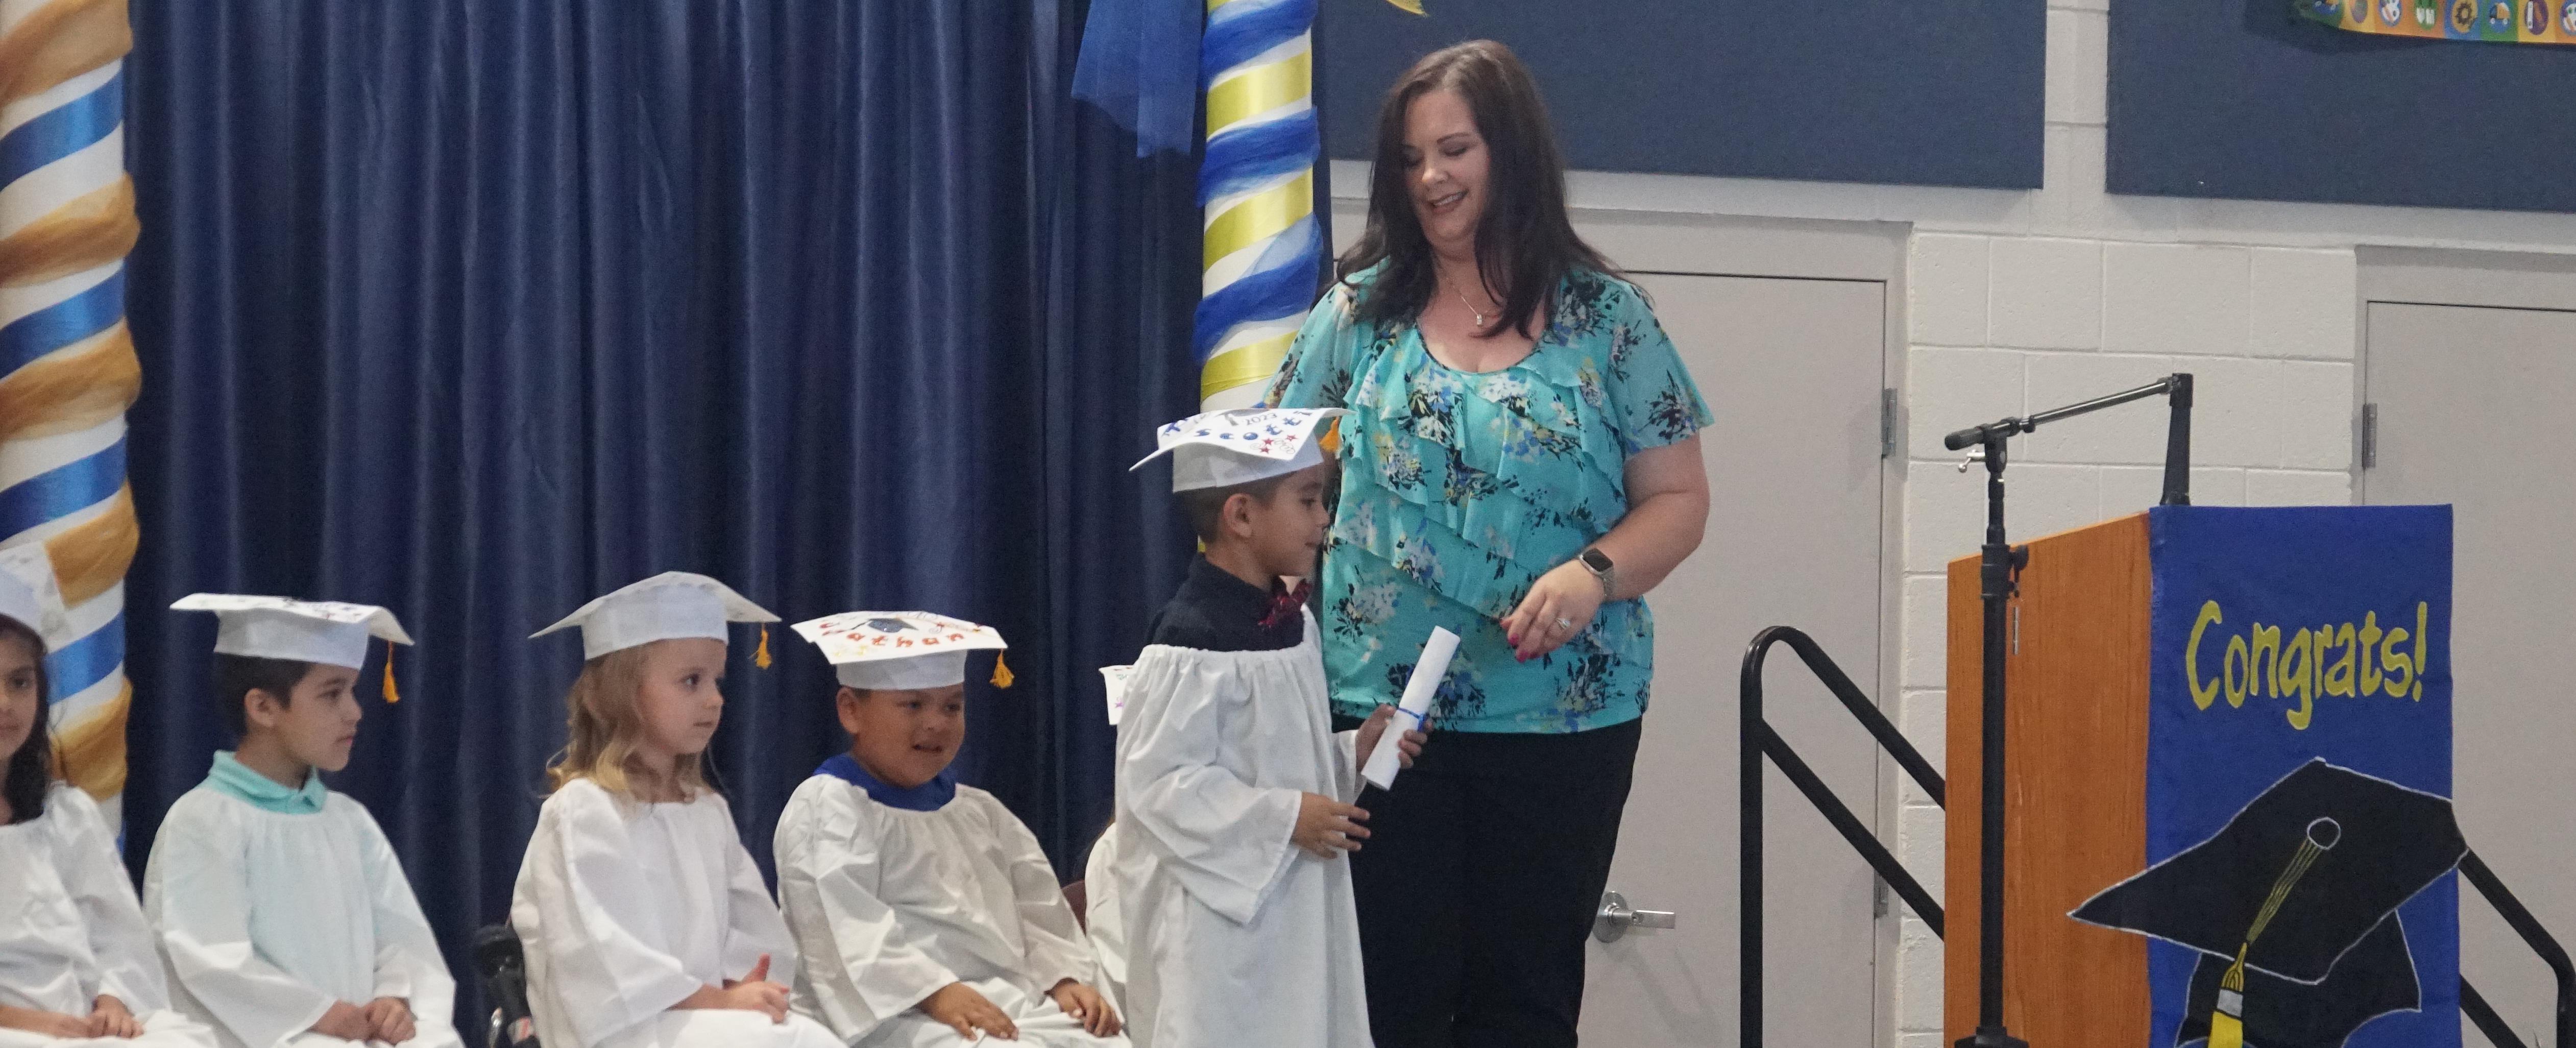 Student receiving diploma at Kindergarten graduation